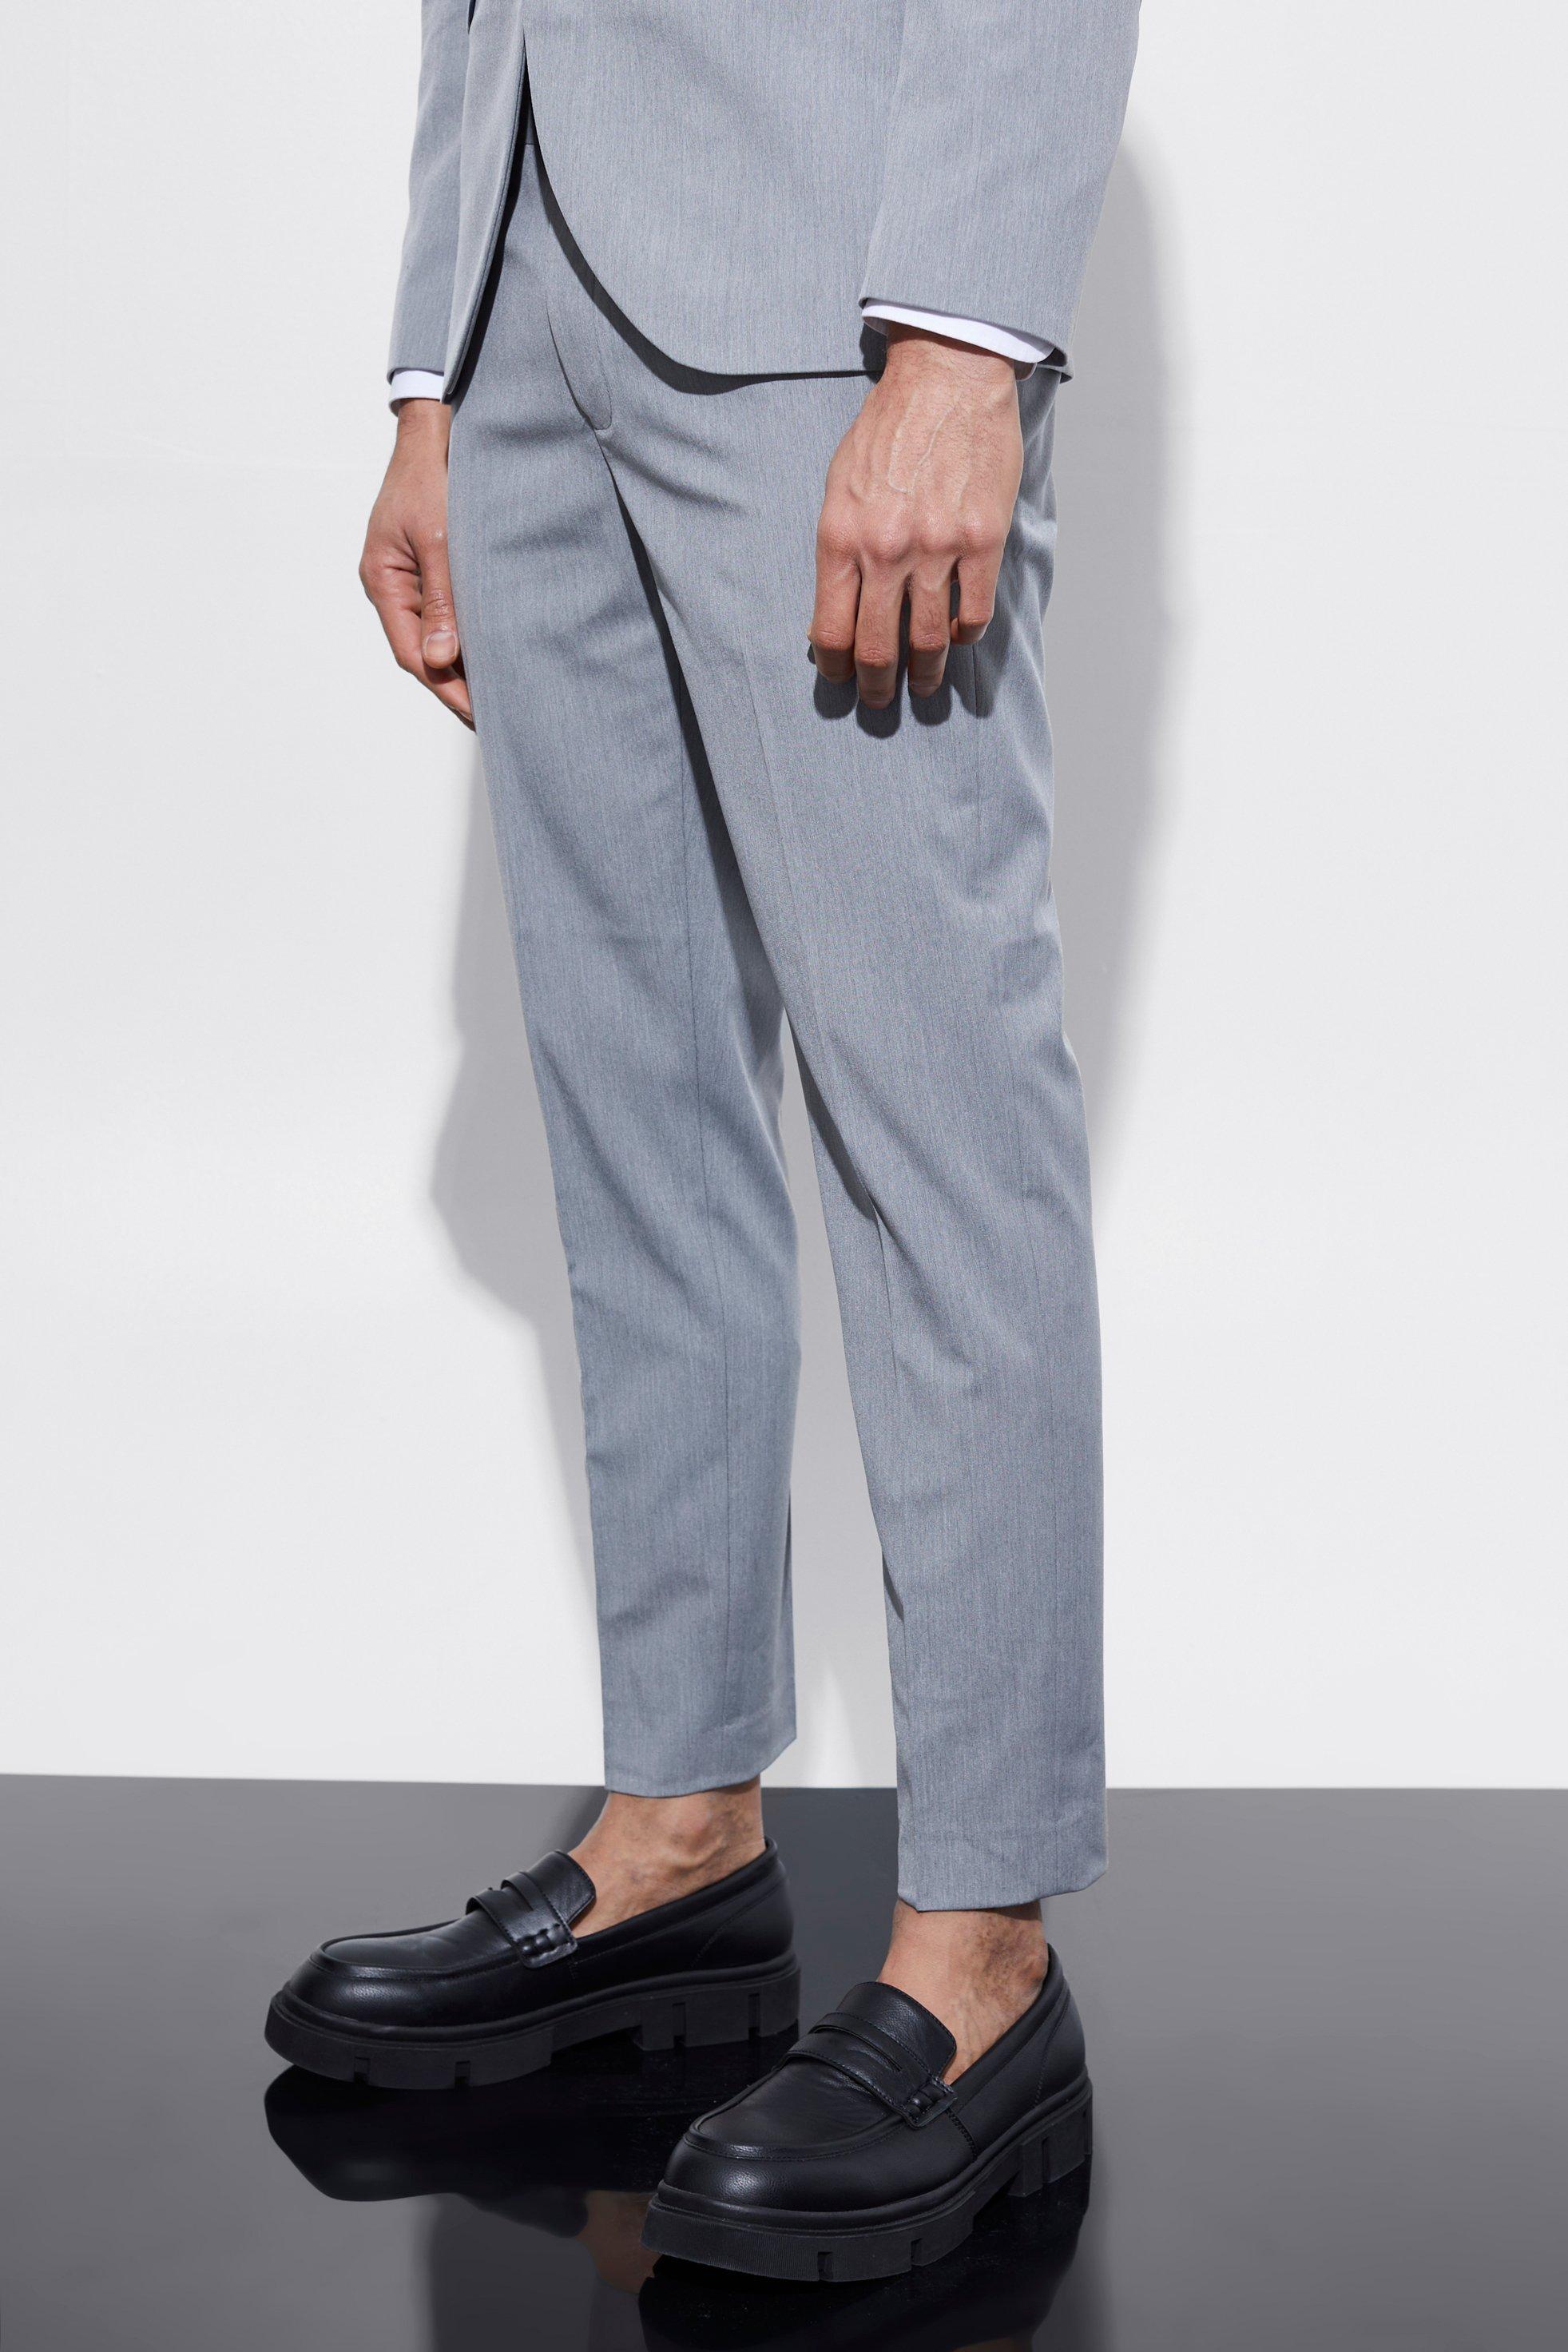 pantalon de costume skinny court homme - gris - 28s, gris